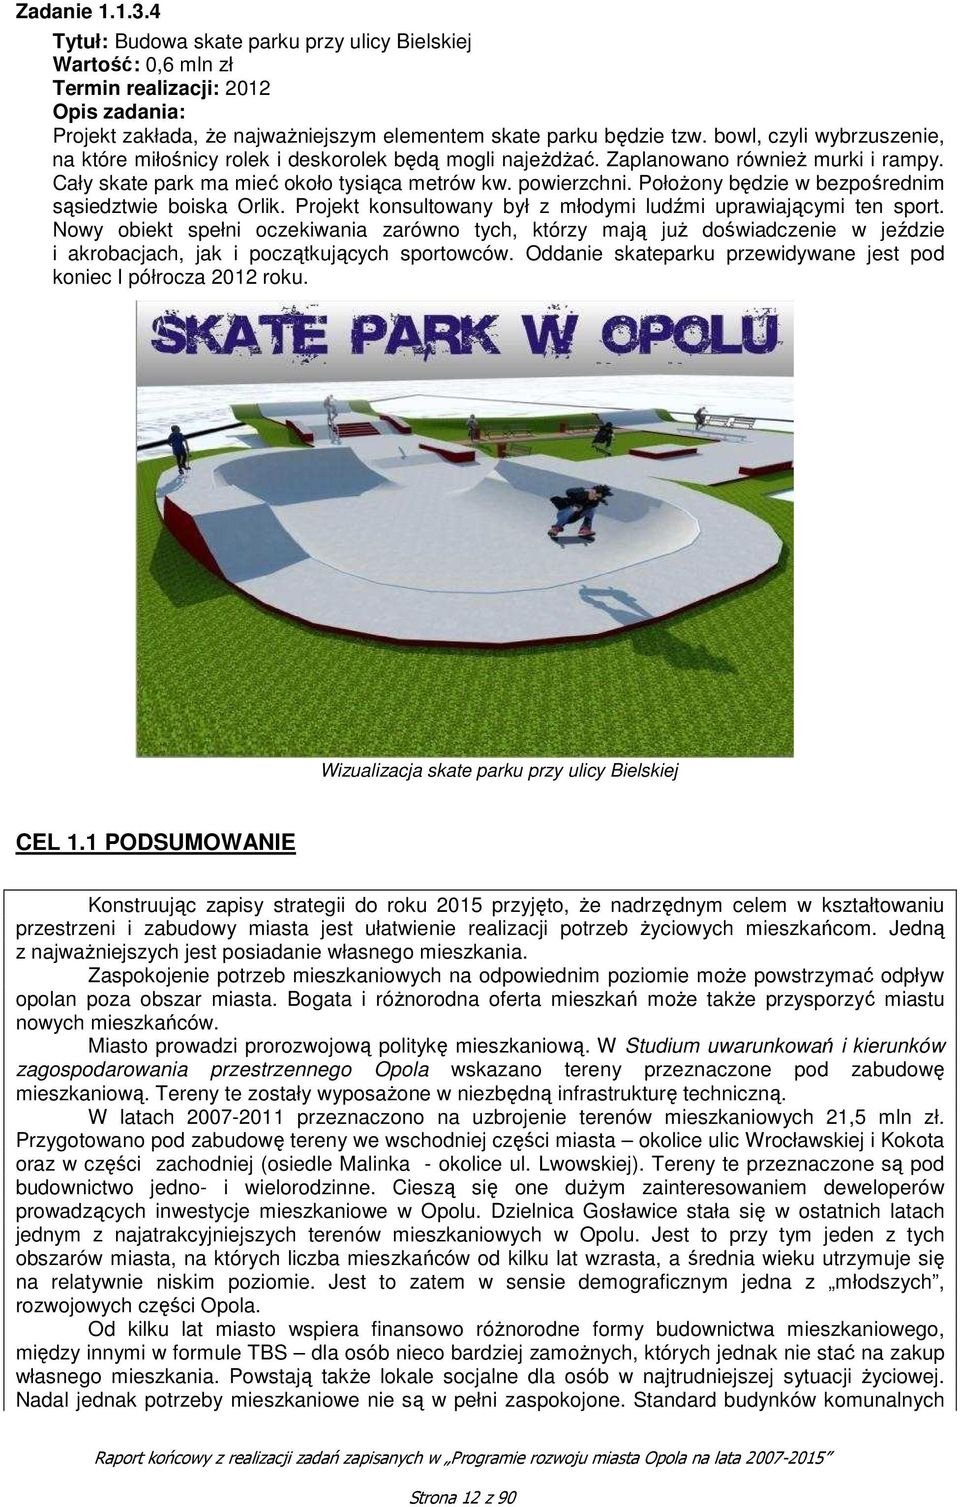 Położony będzie w bezpośrednim sąsiedztwie boiska Orlik. Projekt konsultowany był z młodymi ludźmi uprawiającymi ten sport.